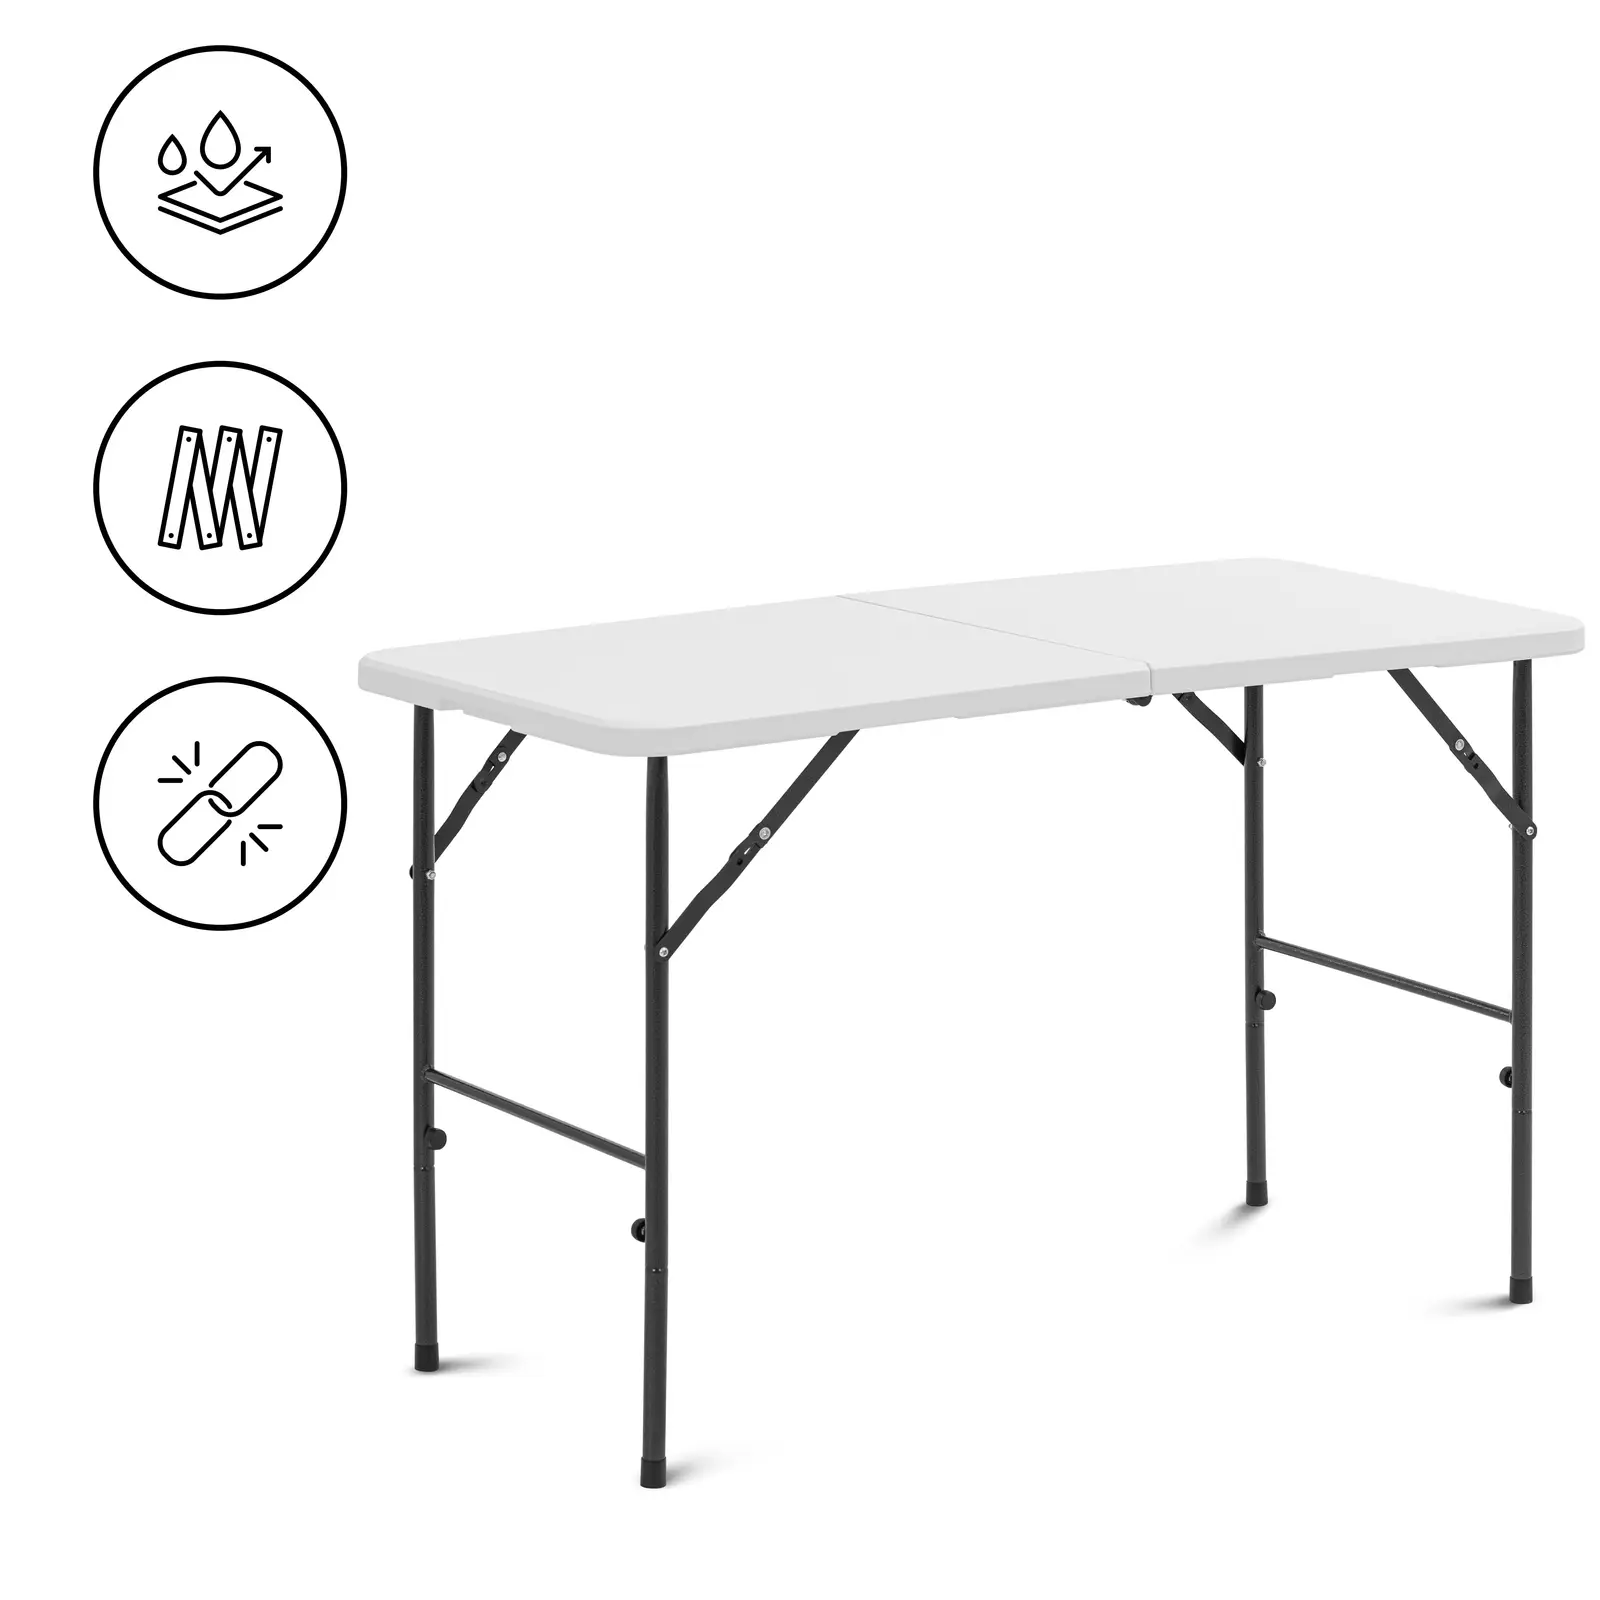 Stół składany - 120 x 60 x 74,50 cm - 75 kg - wewnętrzny/zewnętrzny - biały